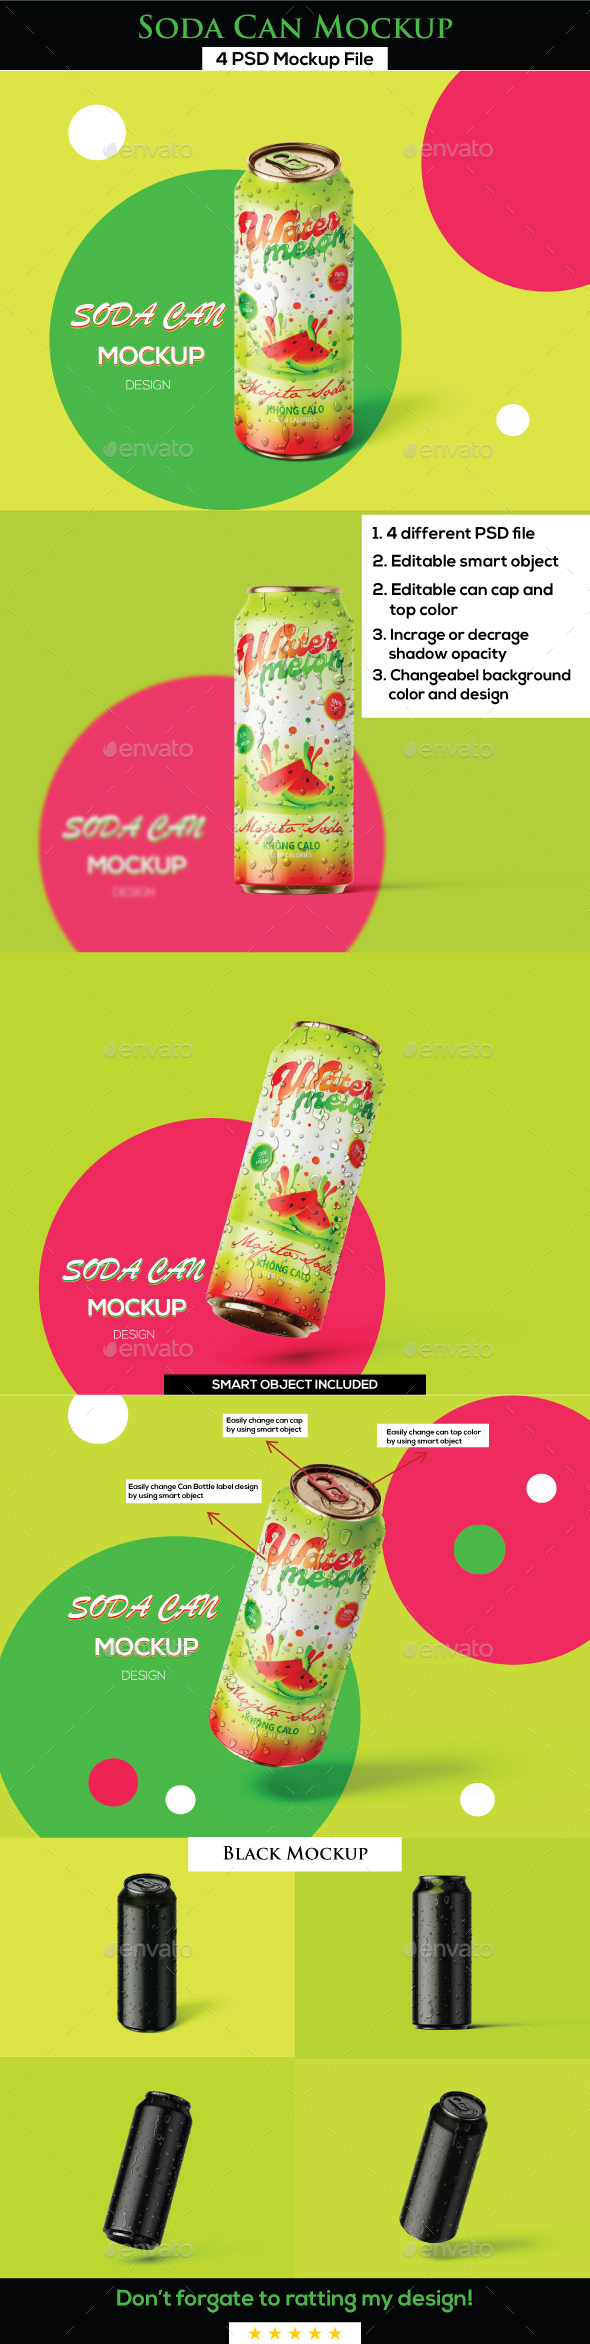 [DOWNLOAD]Soda Can Mockup - 2